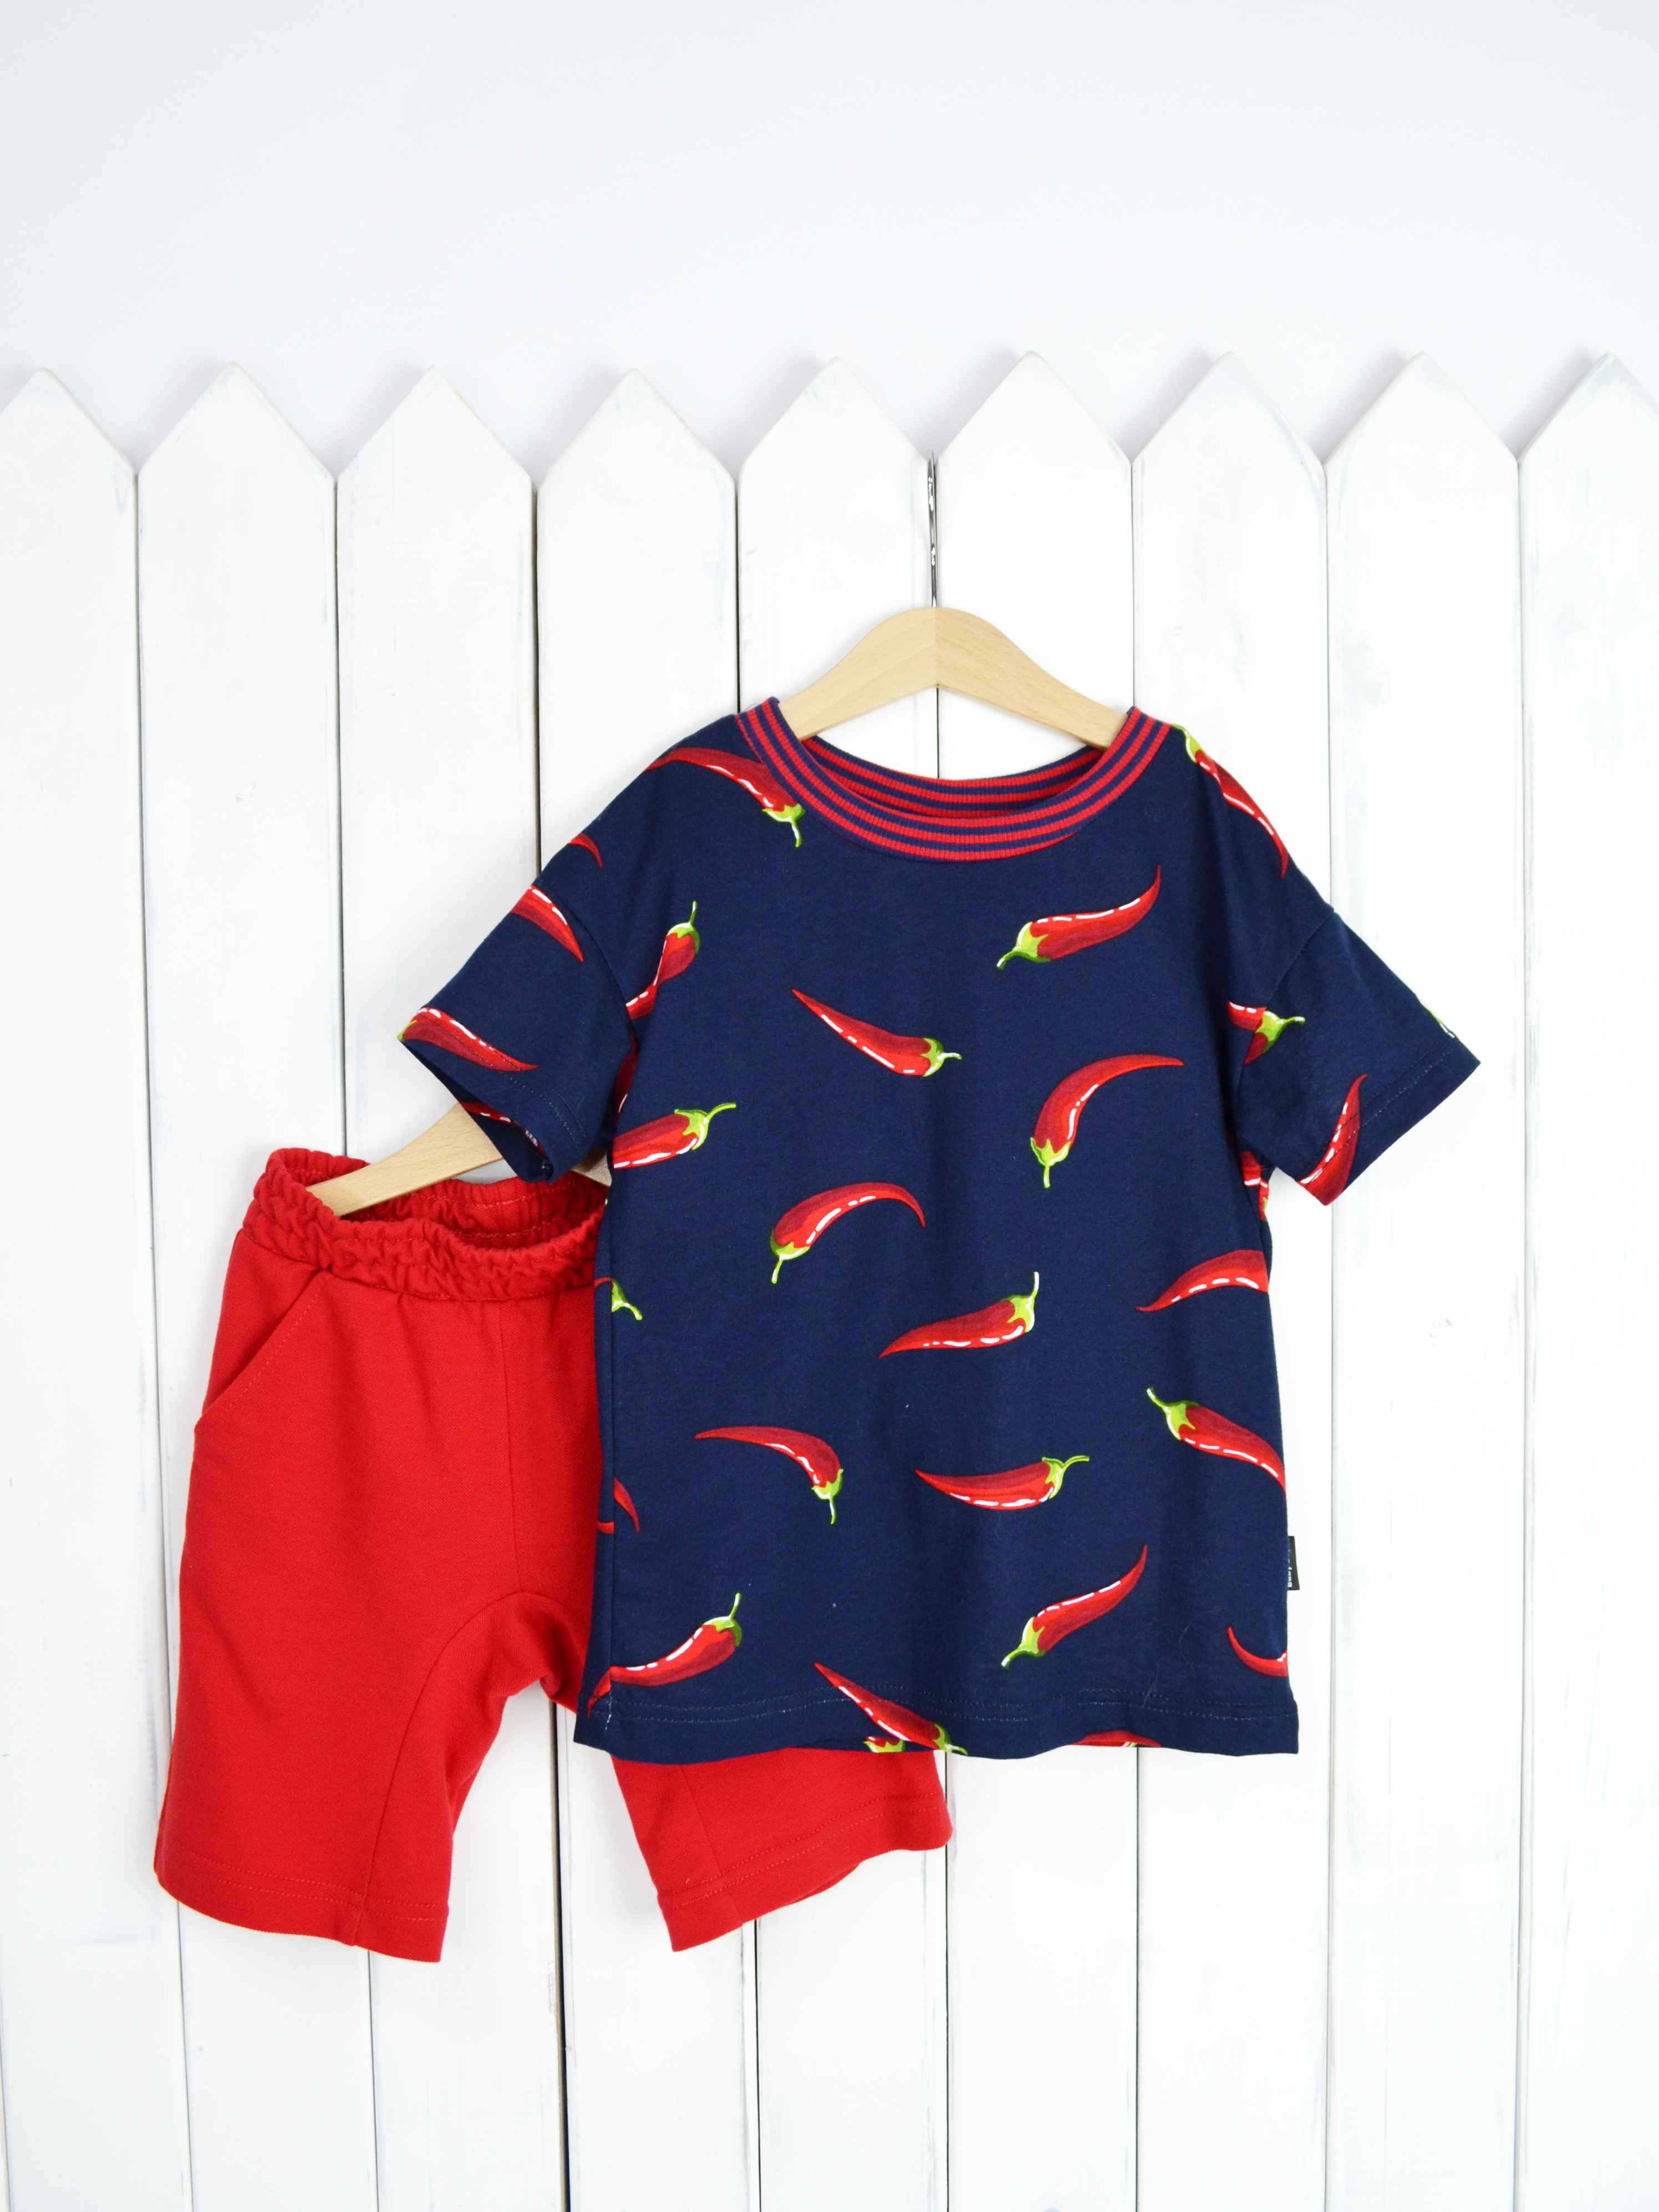 КД354/1-К Комплект детский р.104 Крутые перцы футболка+шорты/красное пике Бэби Бум